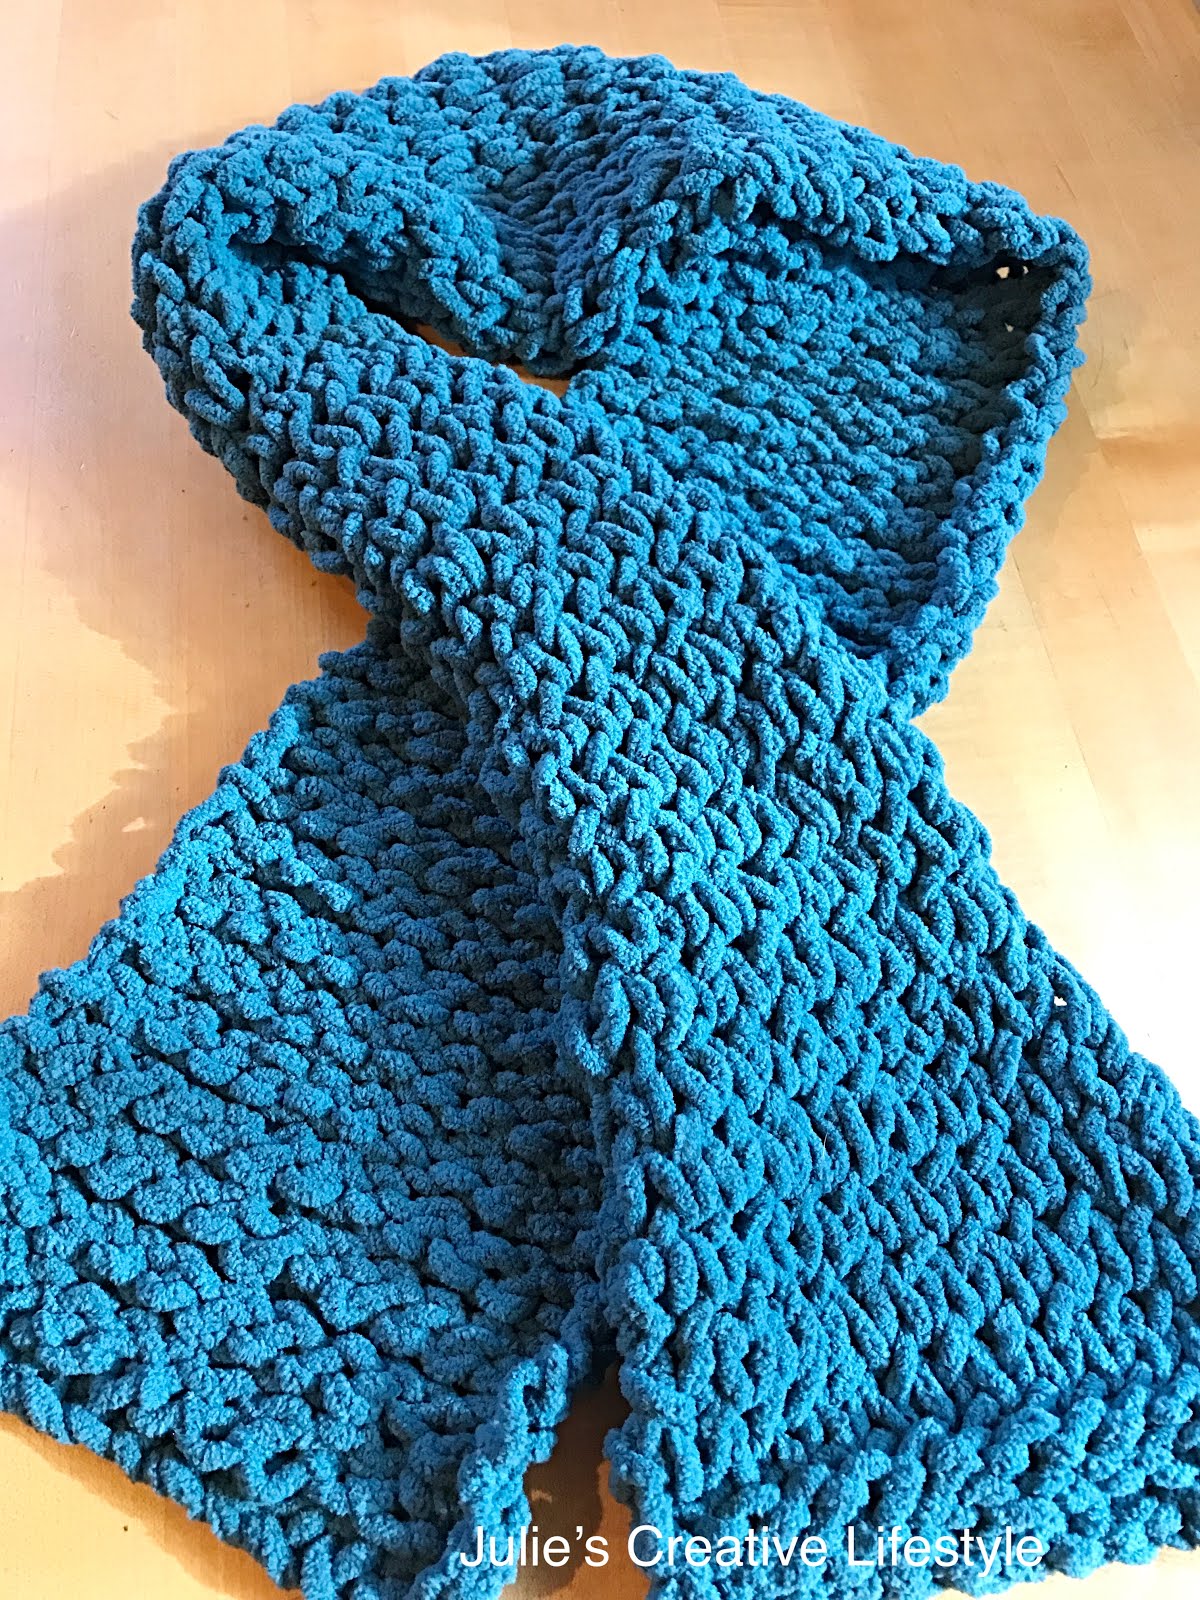 Making a Knit Scarf Using Blanket Yarn